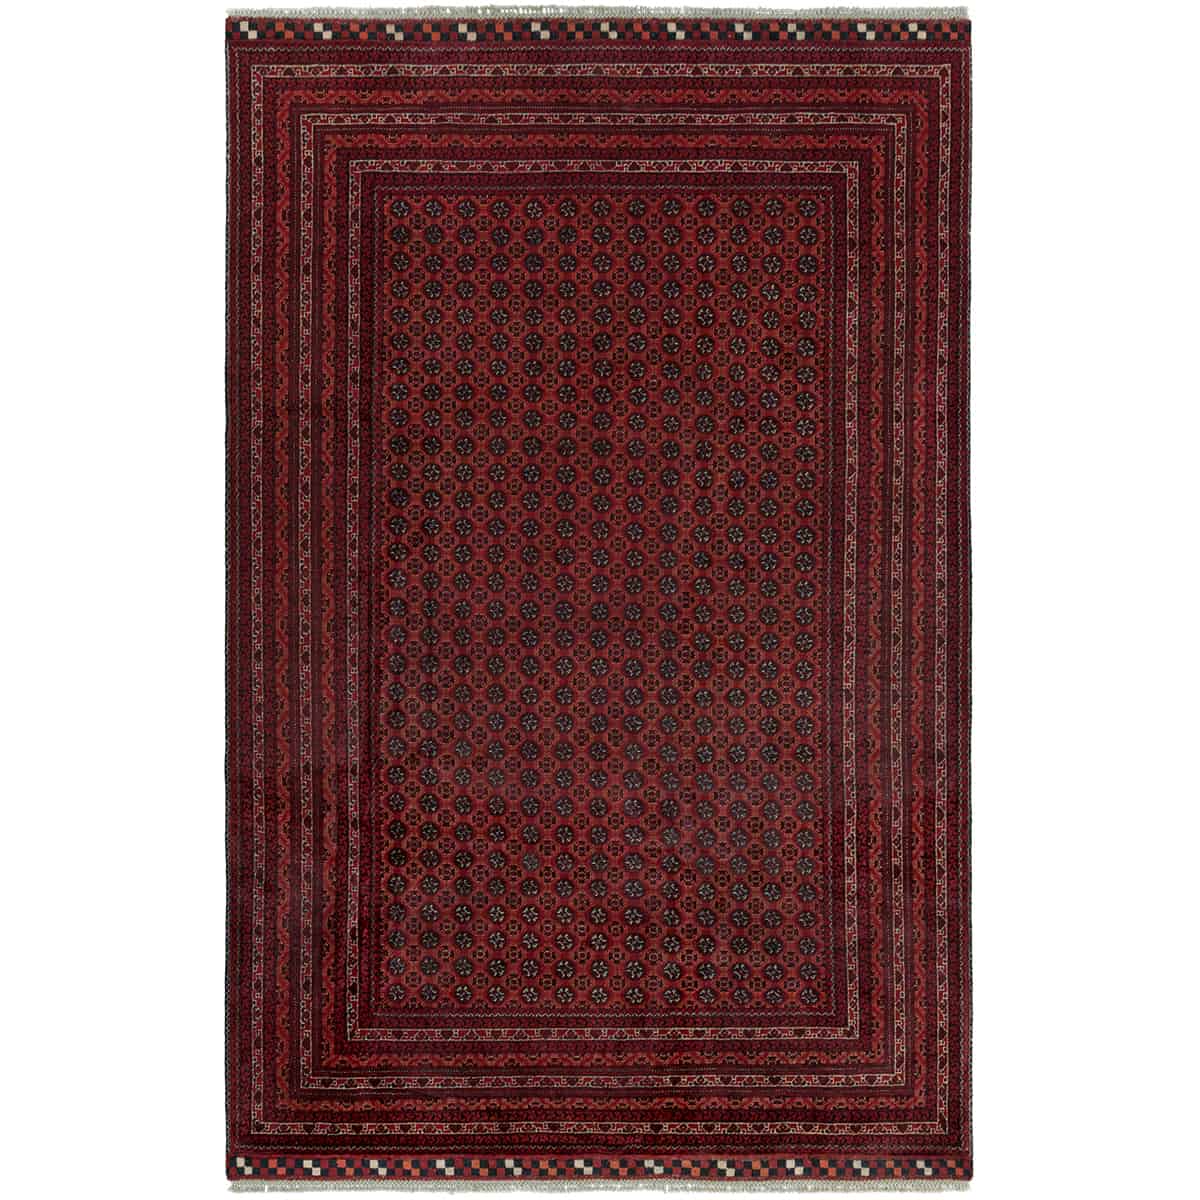  אפגני באשיר 00 אדום 197x293 | השטיח האדום 